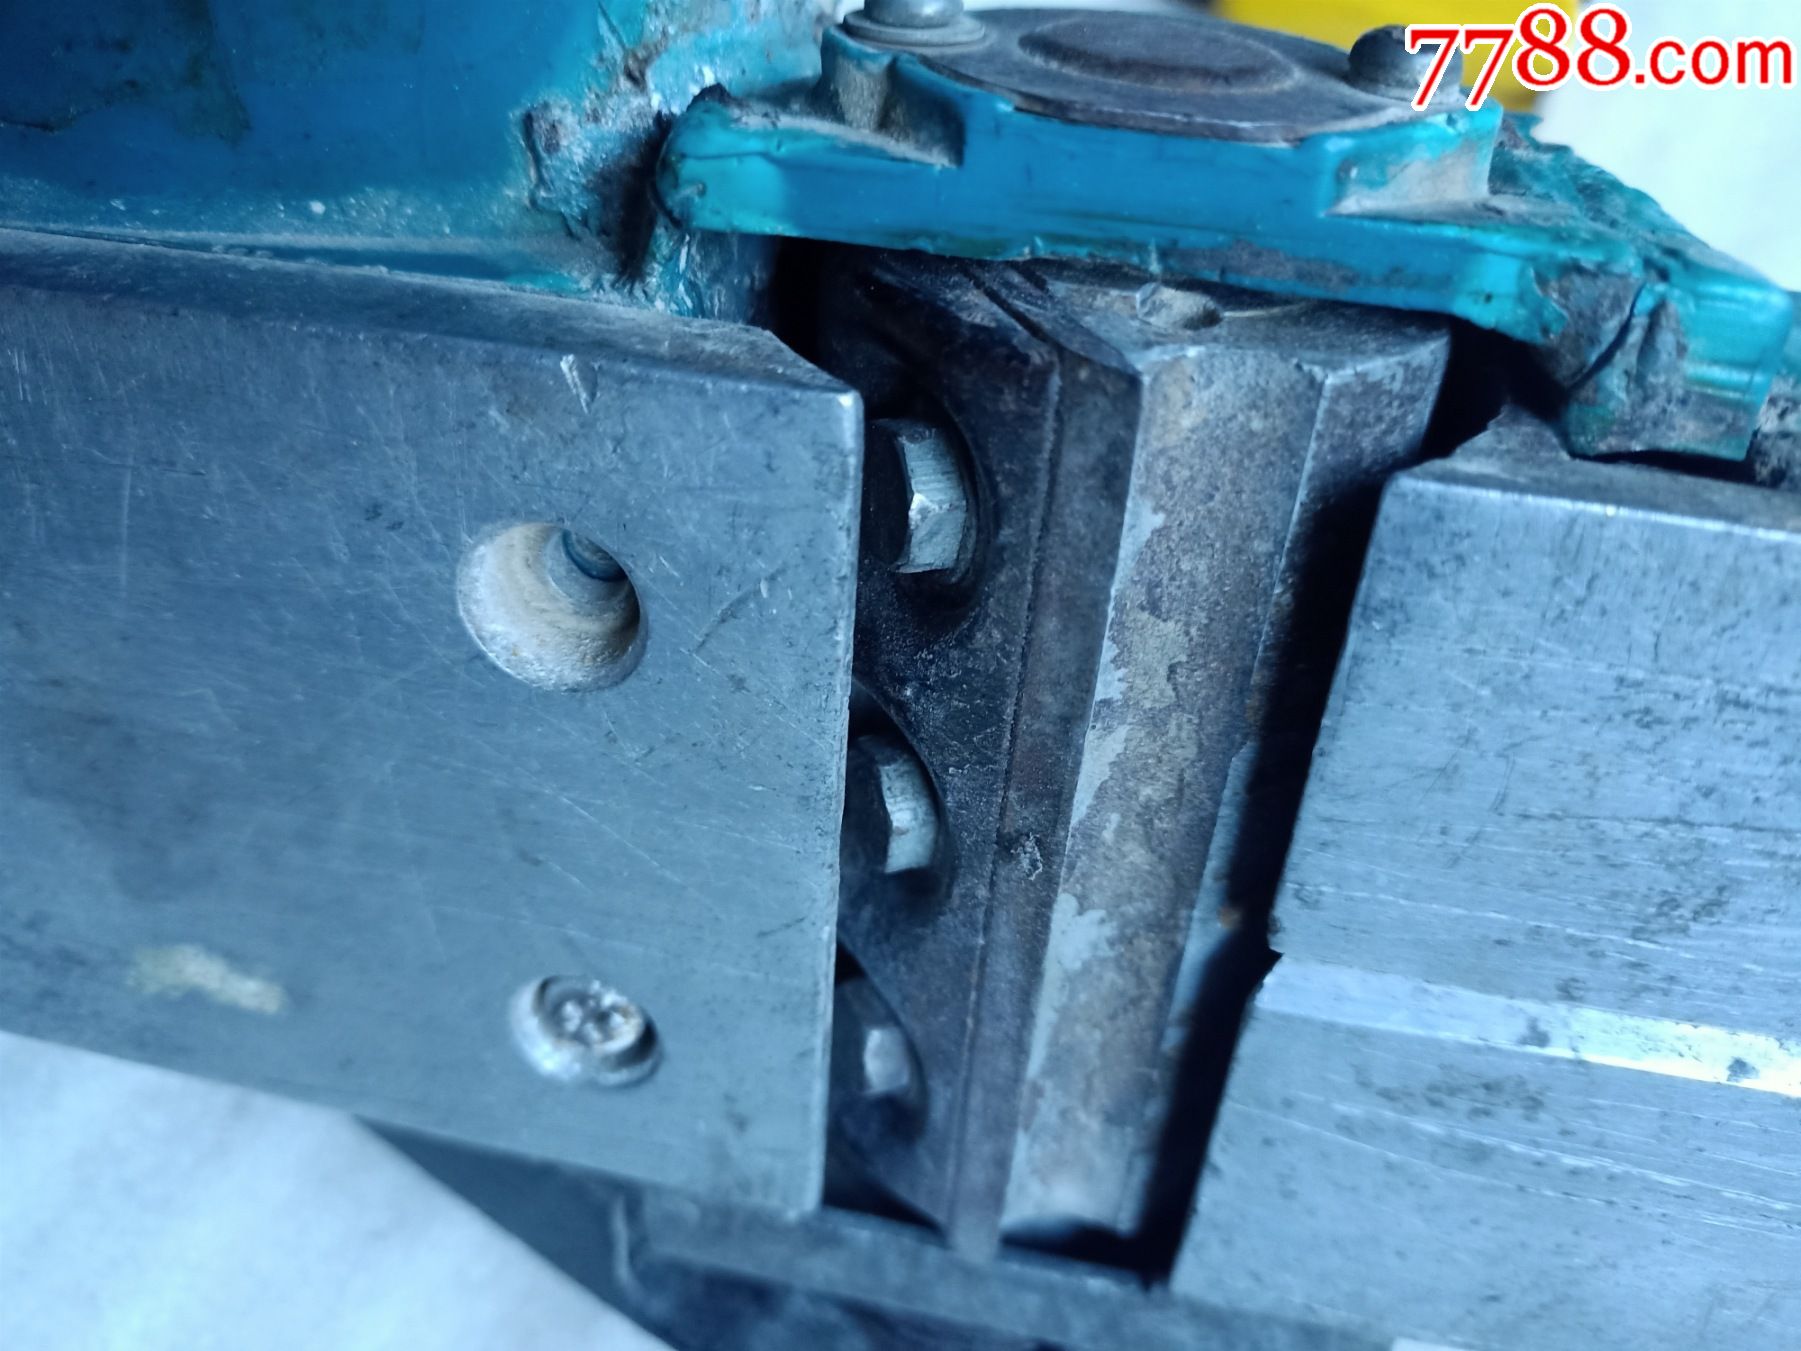 七八十年代日本电刨子a559,电机正常使用,刨刀轴处外壳损坏,电机与轴